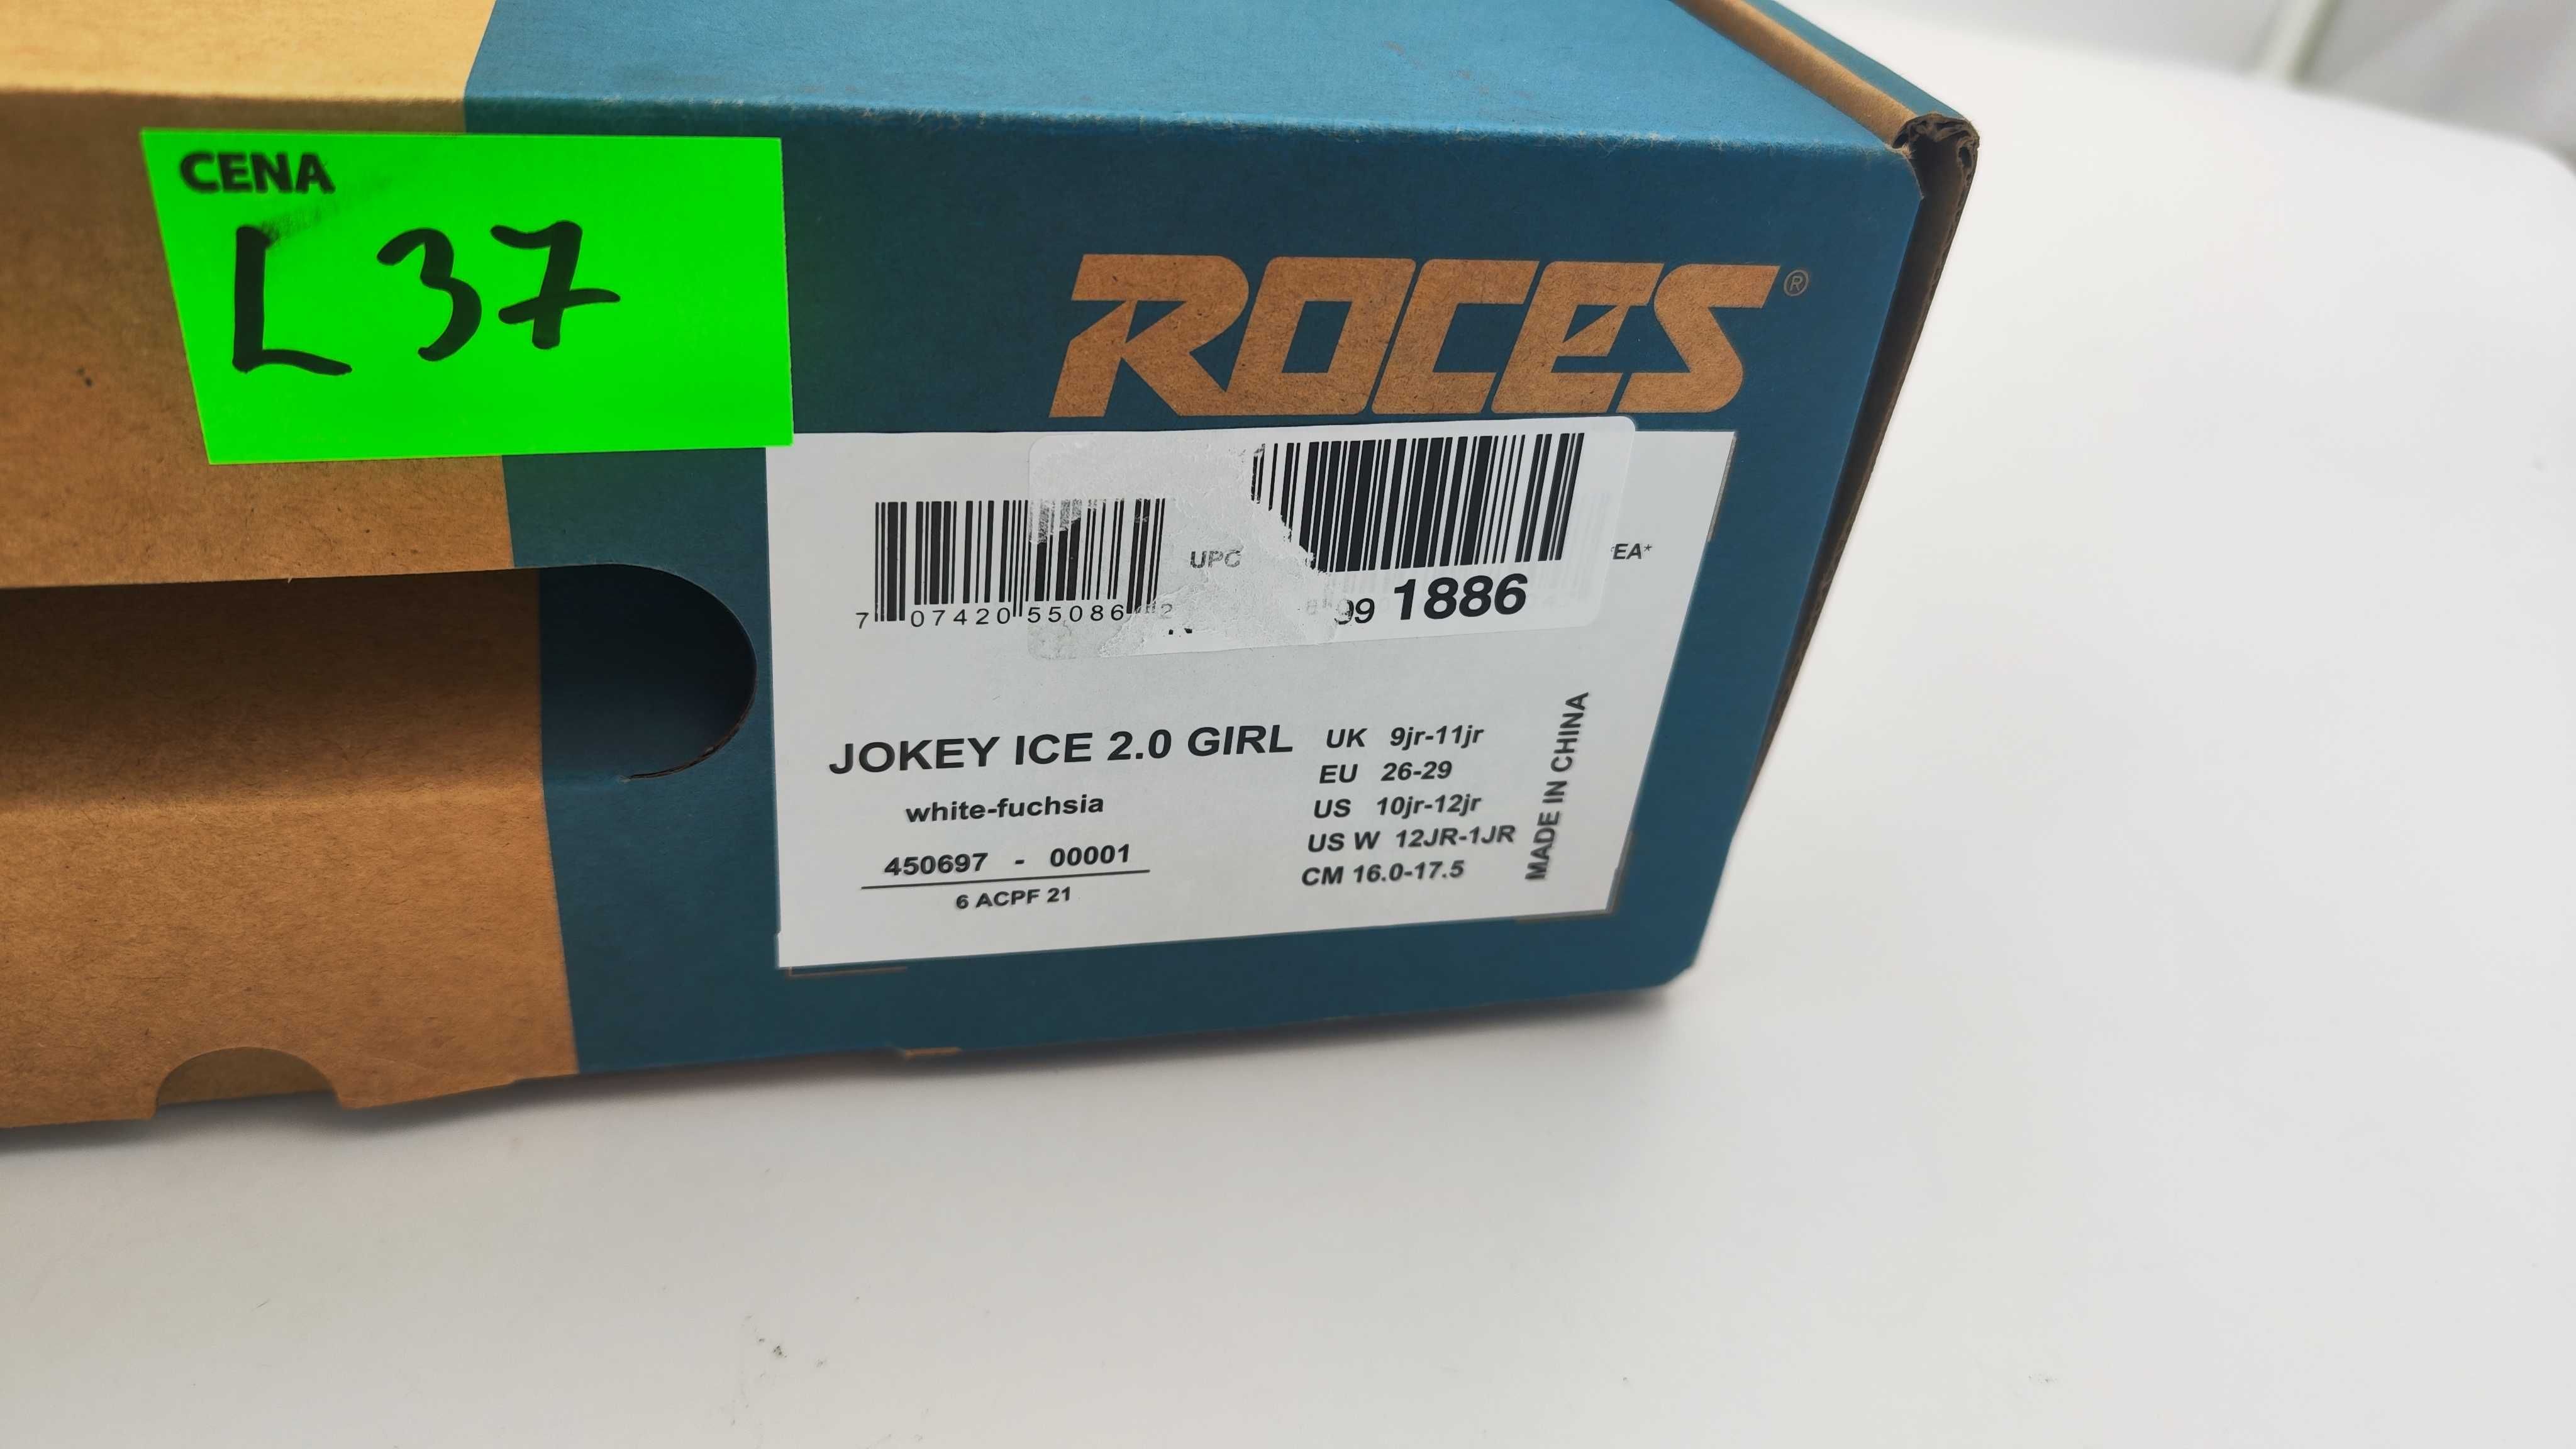 Łyżwy Roces Jokey Ice 2.0 Girl r. 26-29 (16-17,5cm)( L37)